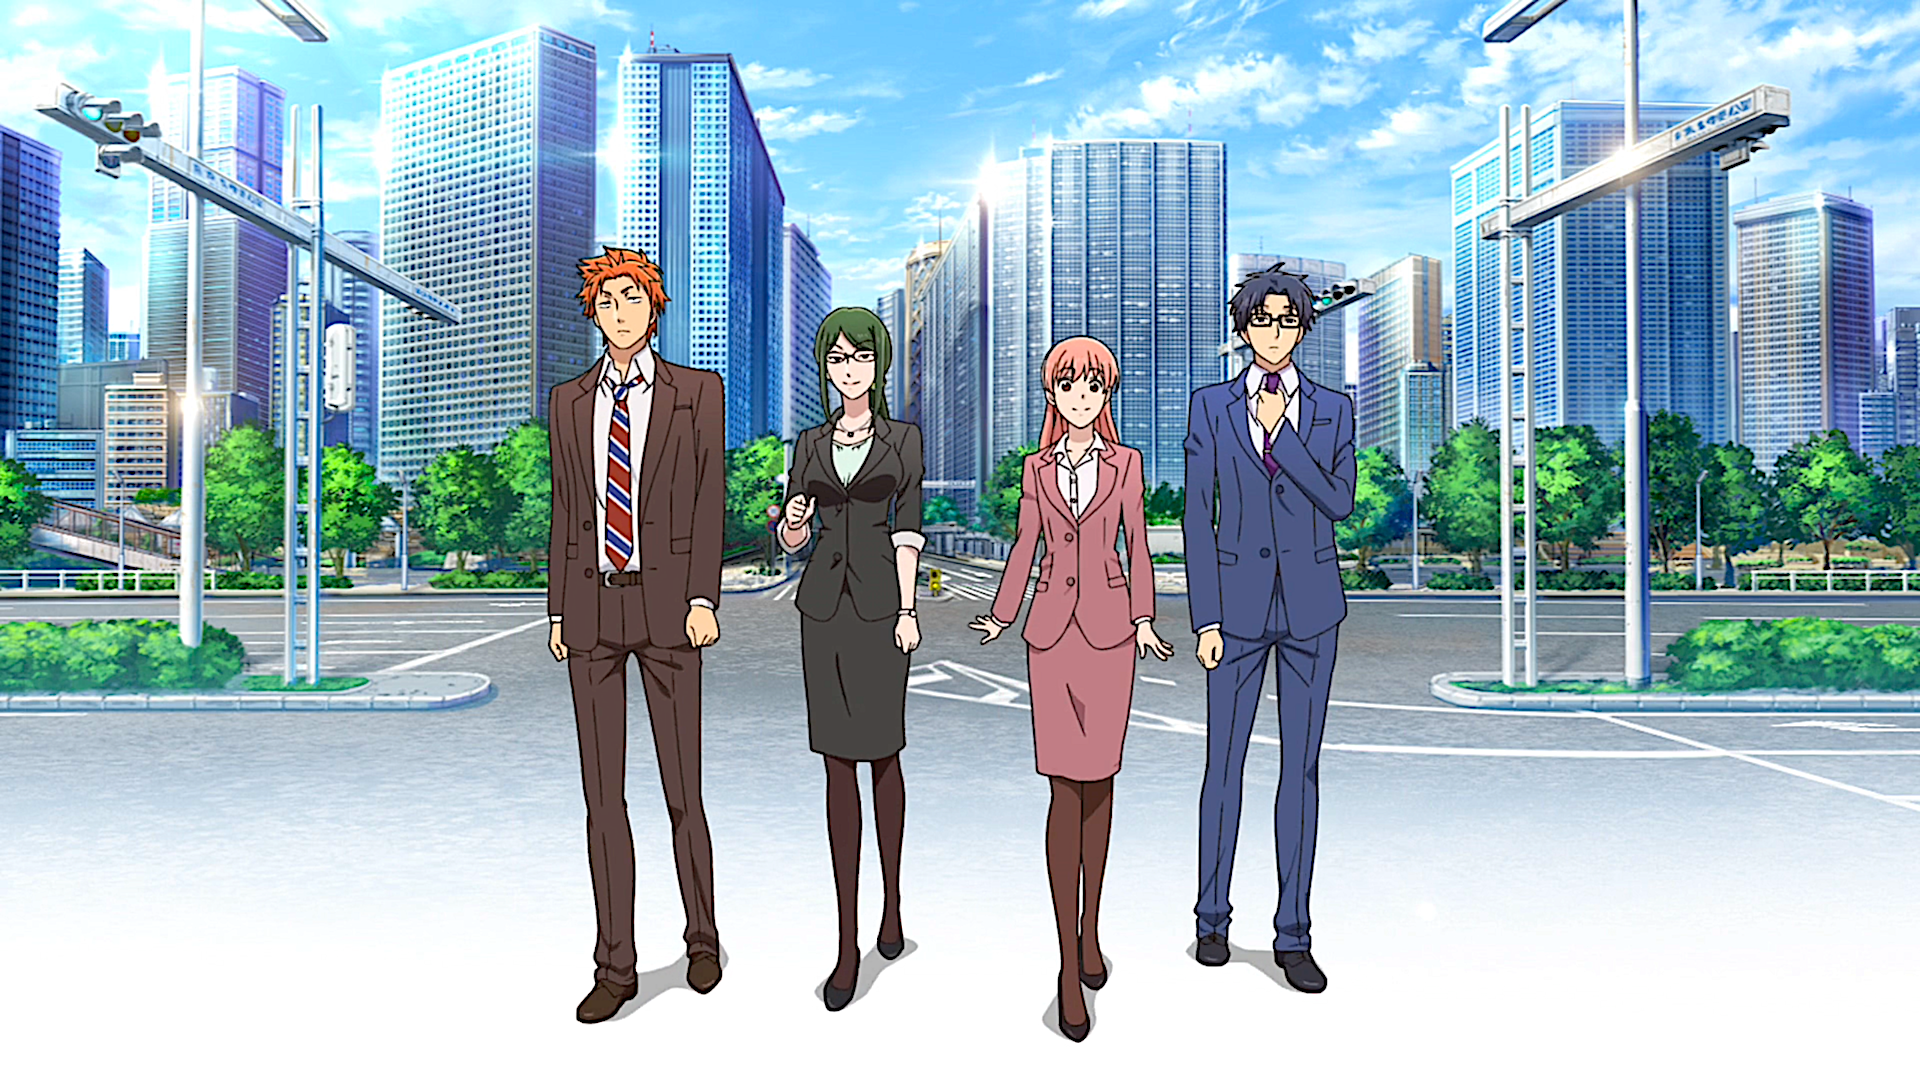 Anime Wotaku ni Koi wa Muzukashii HD Wallpaper | Background Image